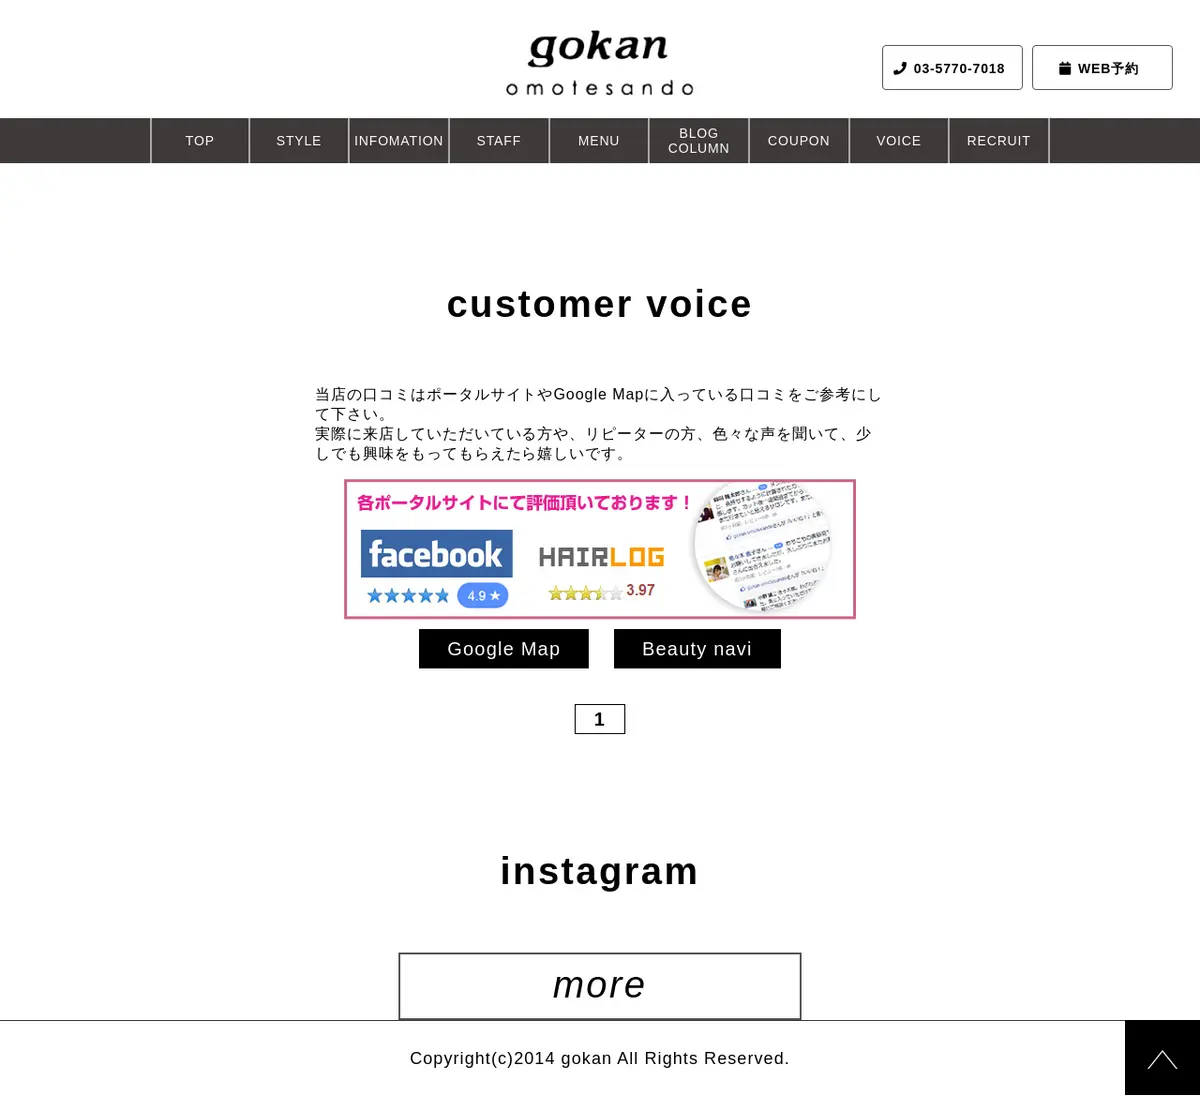 キャプチャ画面 会社名:gokan omotesandoプロジェクト名:gokan omotesando 画面名:クチコミ・レビュー一覧 デバイス名:PCカテゴリ:美容・化粧・エステタグ:クチコミ・レビュー一覧,PC